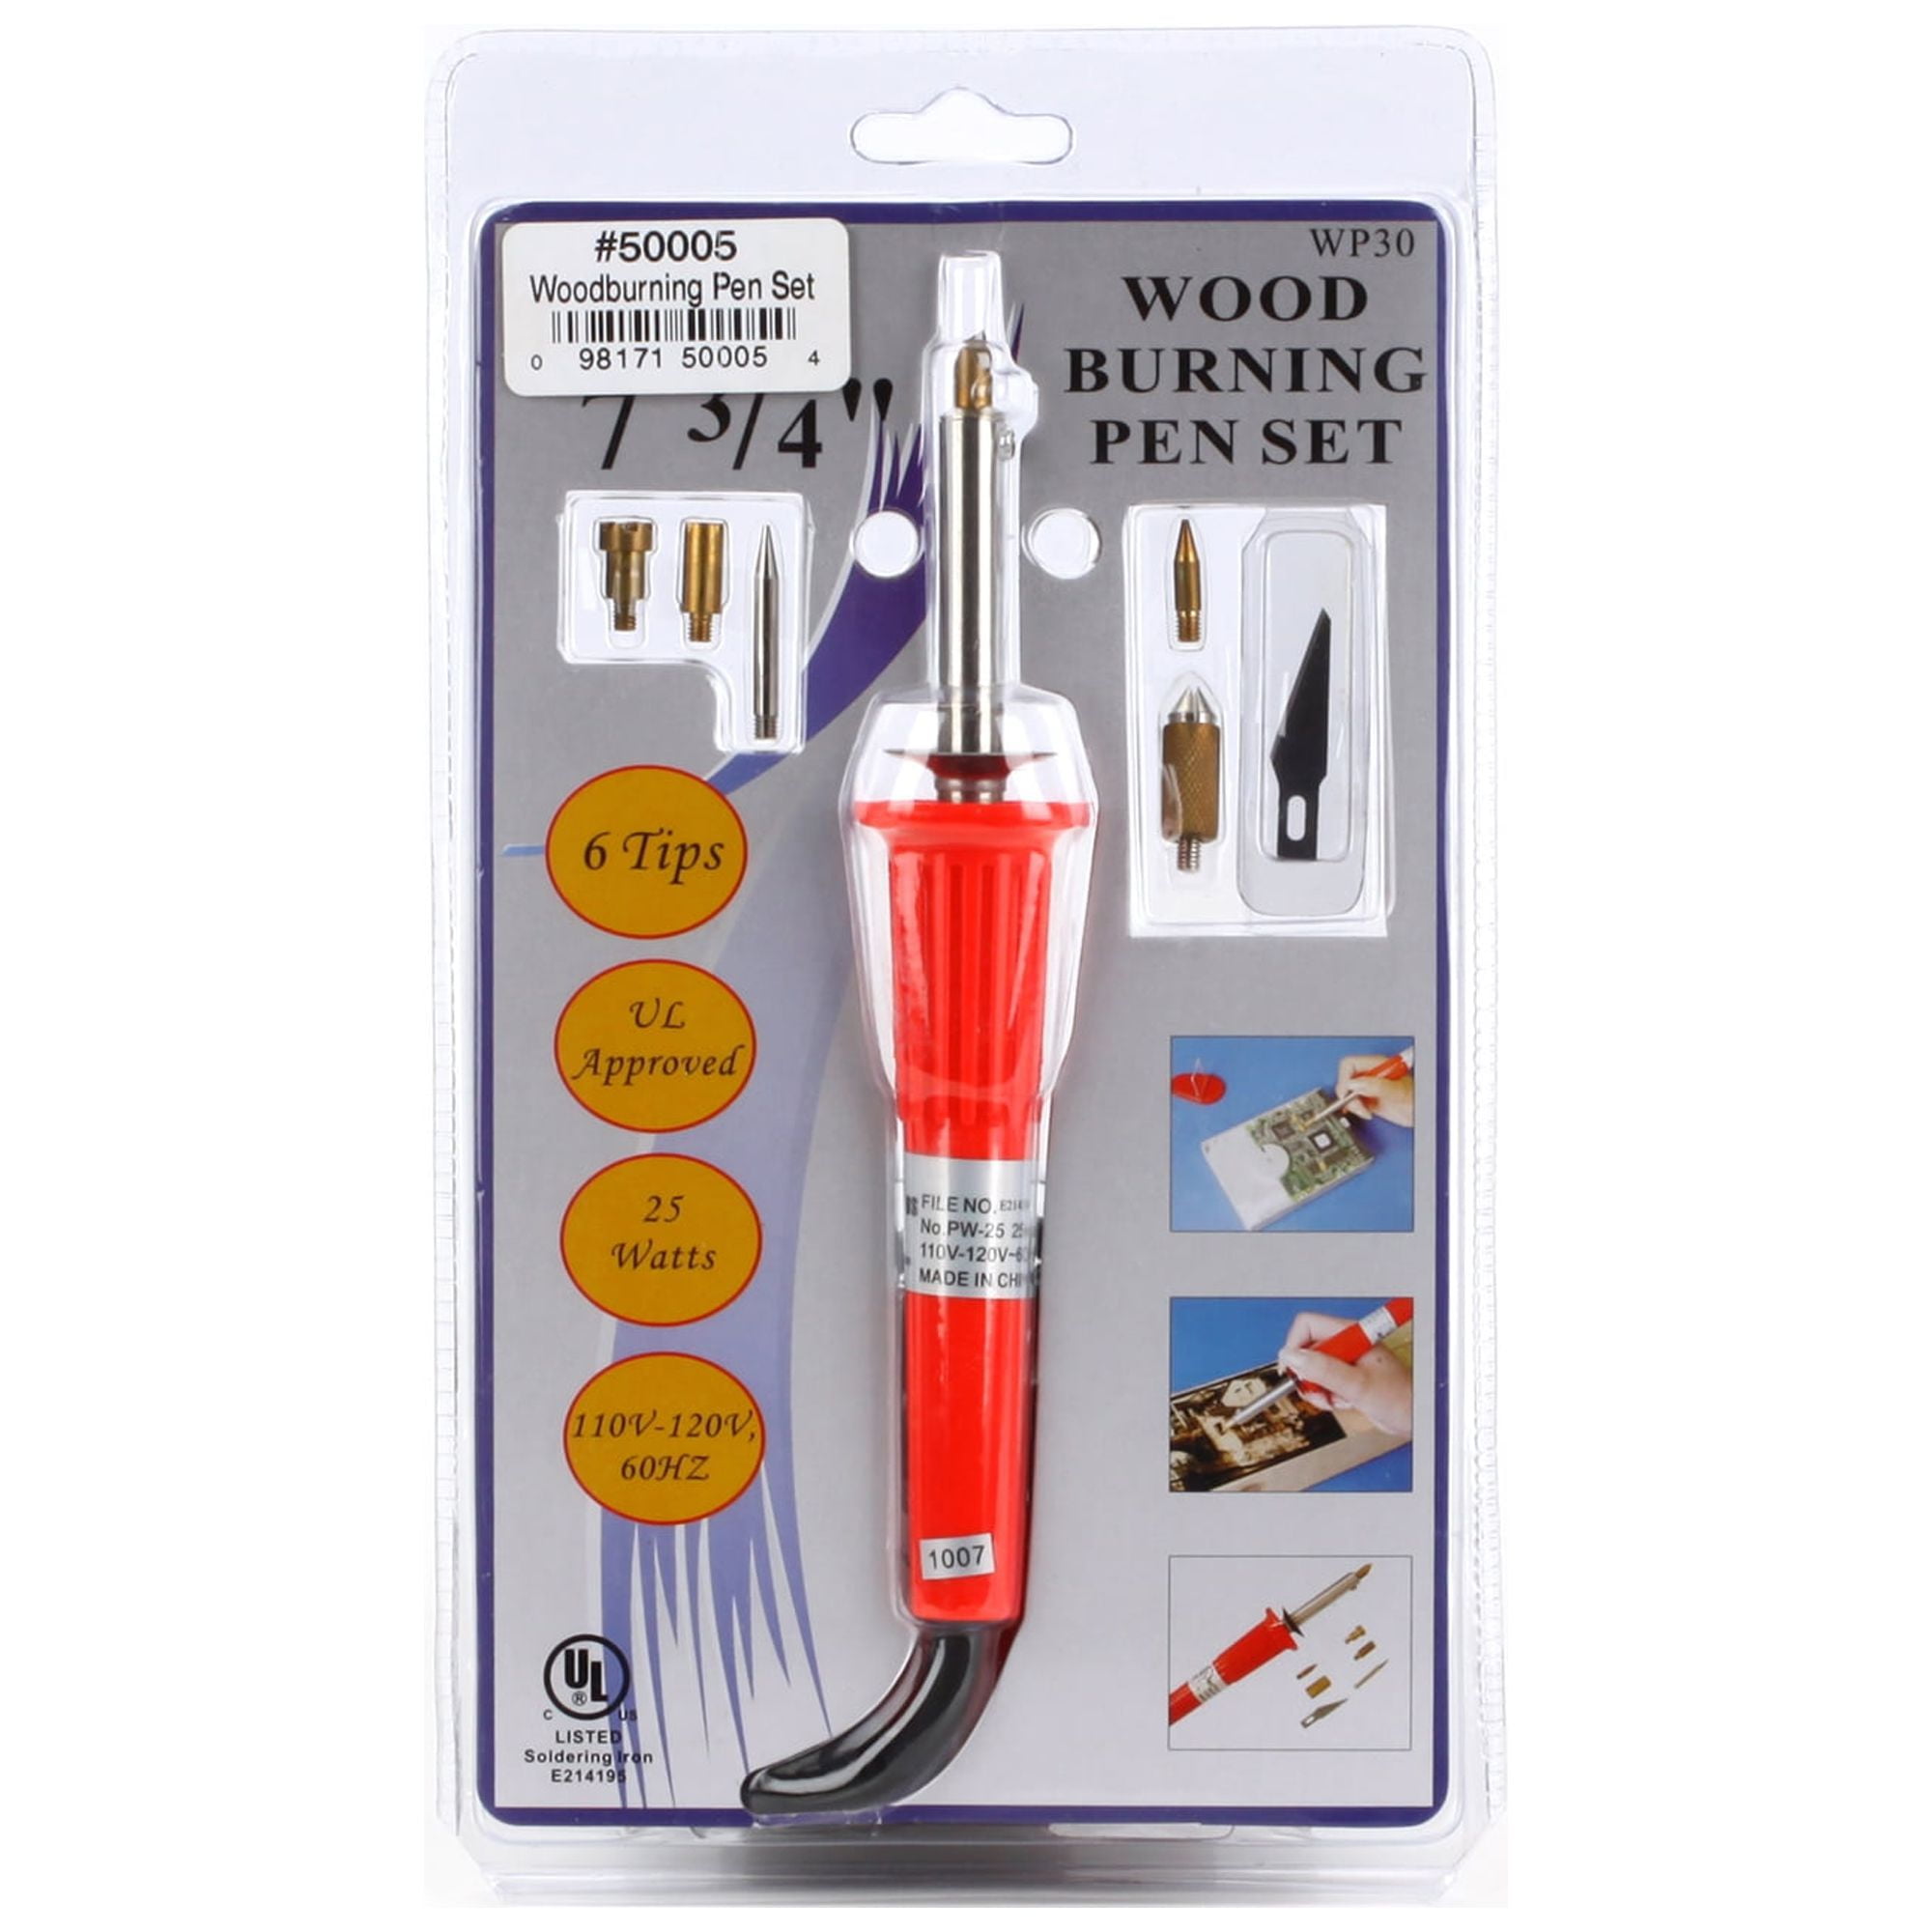 Wood burning Pen Set, 30W - 098171500054